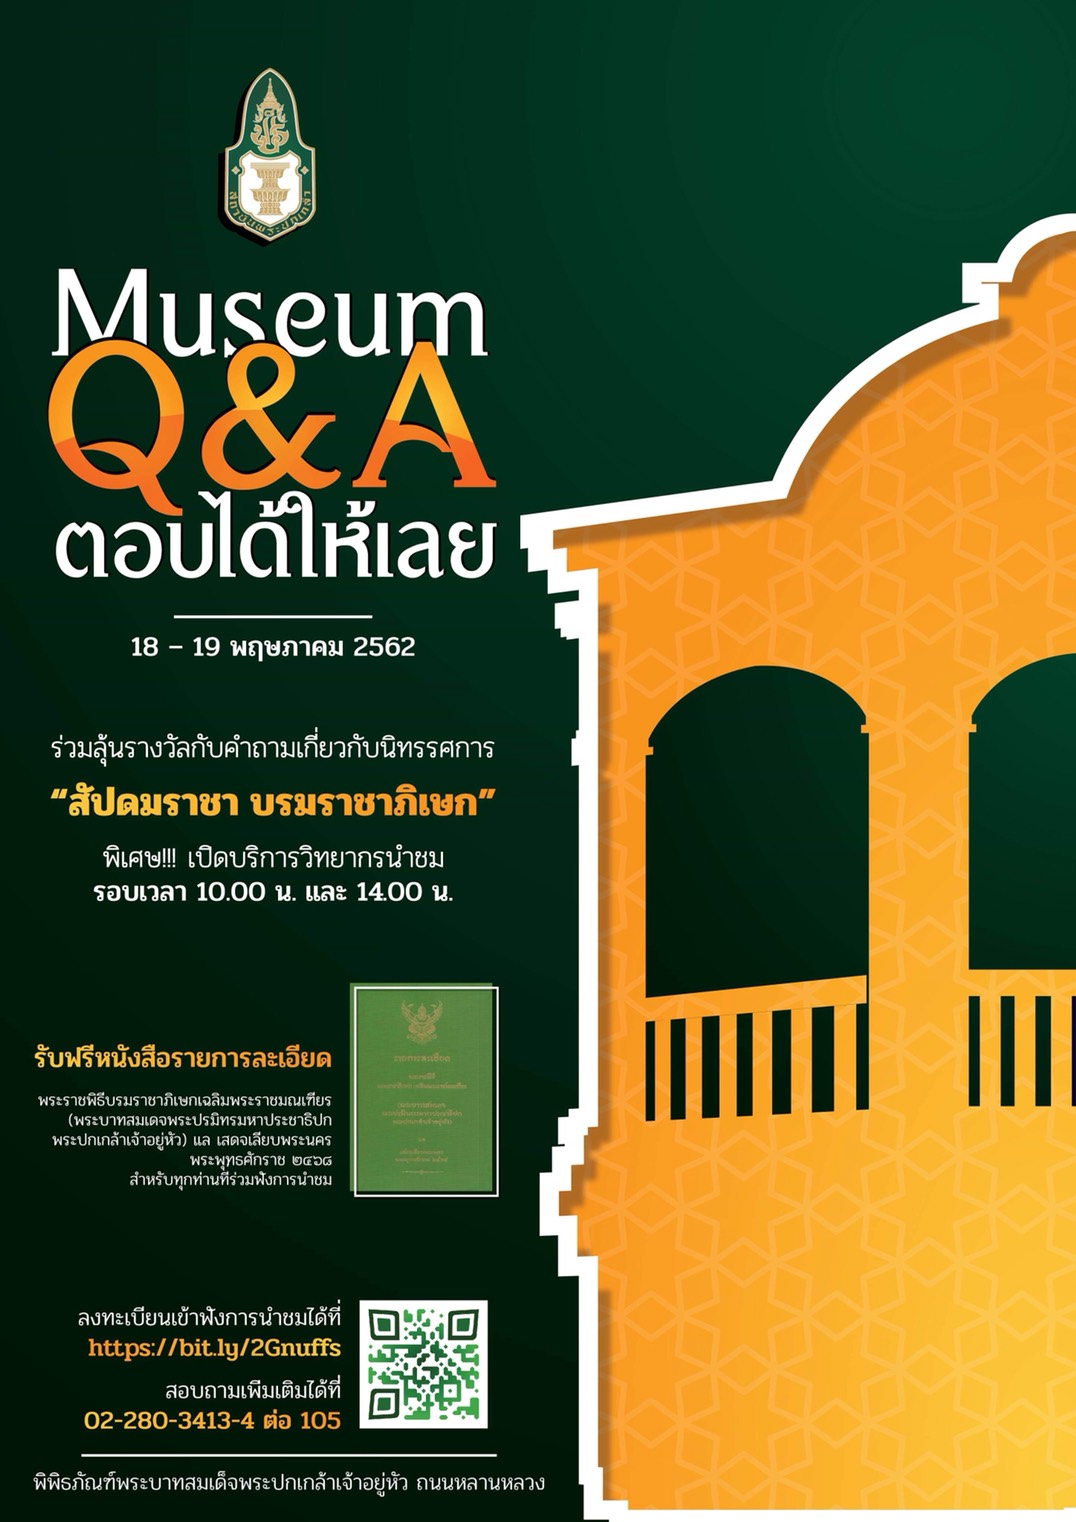 ขอเชิญร่วมลุ้นรางวัลกับกิจกรรม“Museum Q&A ตอบได้ให้เลย”  